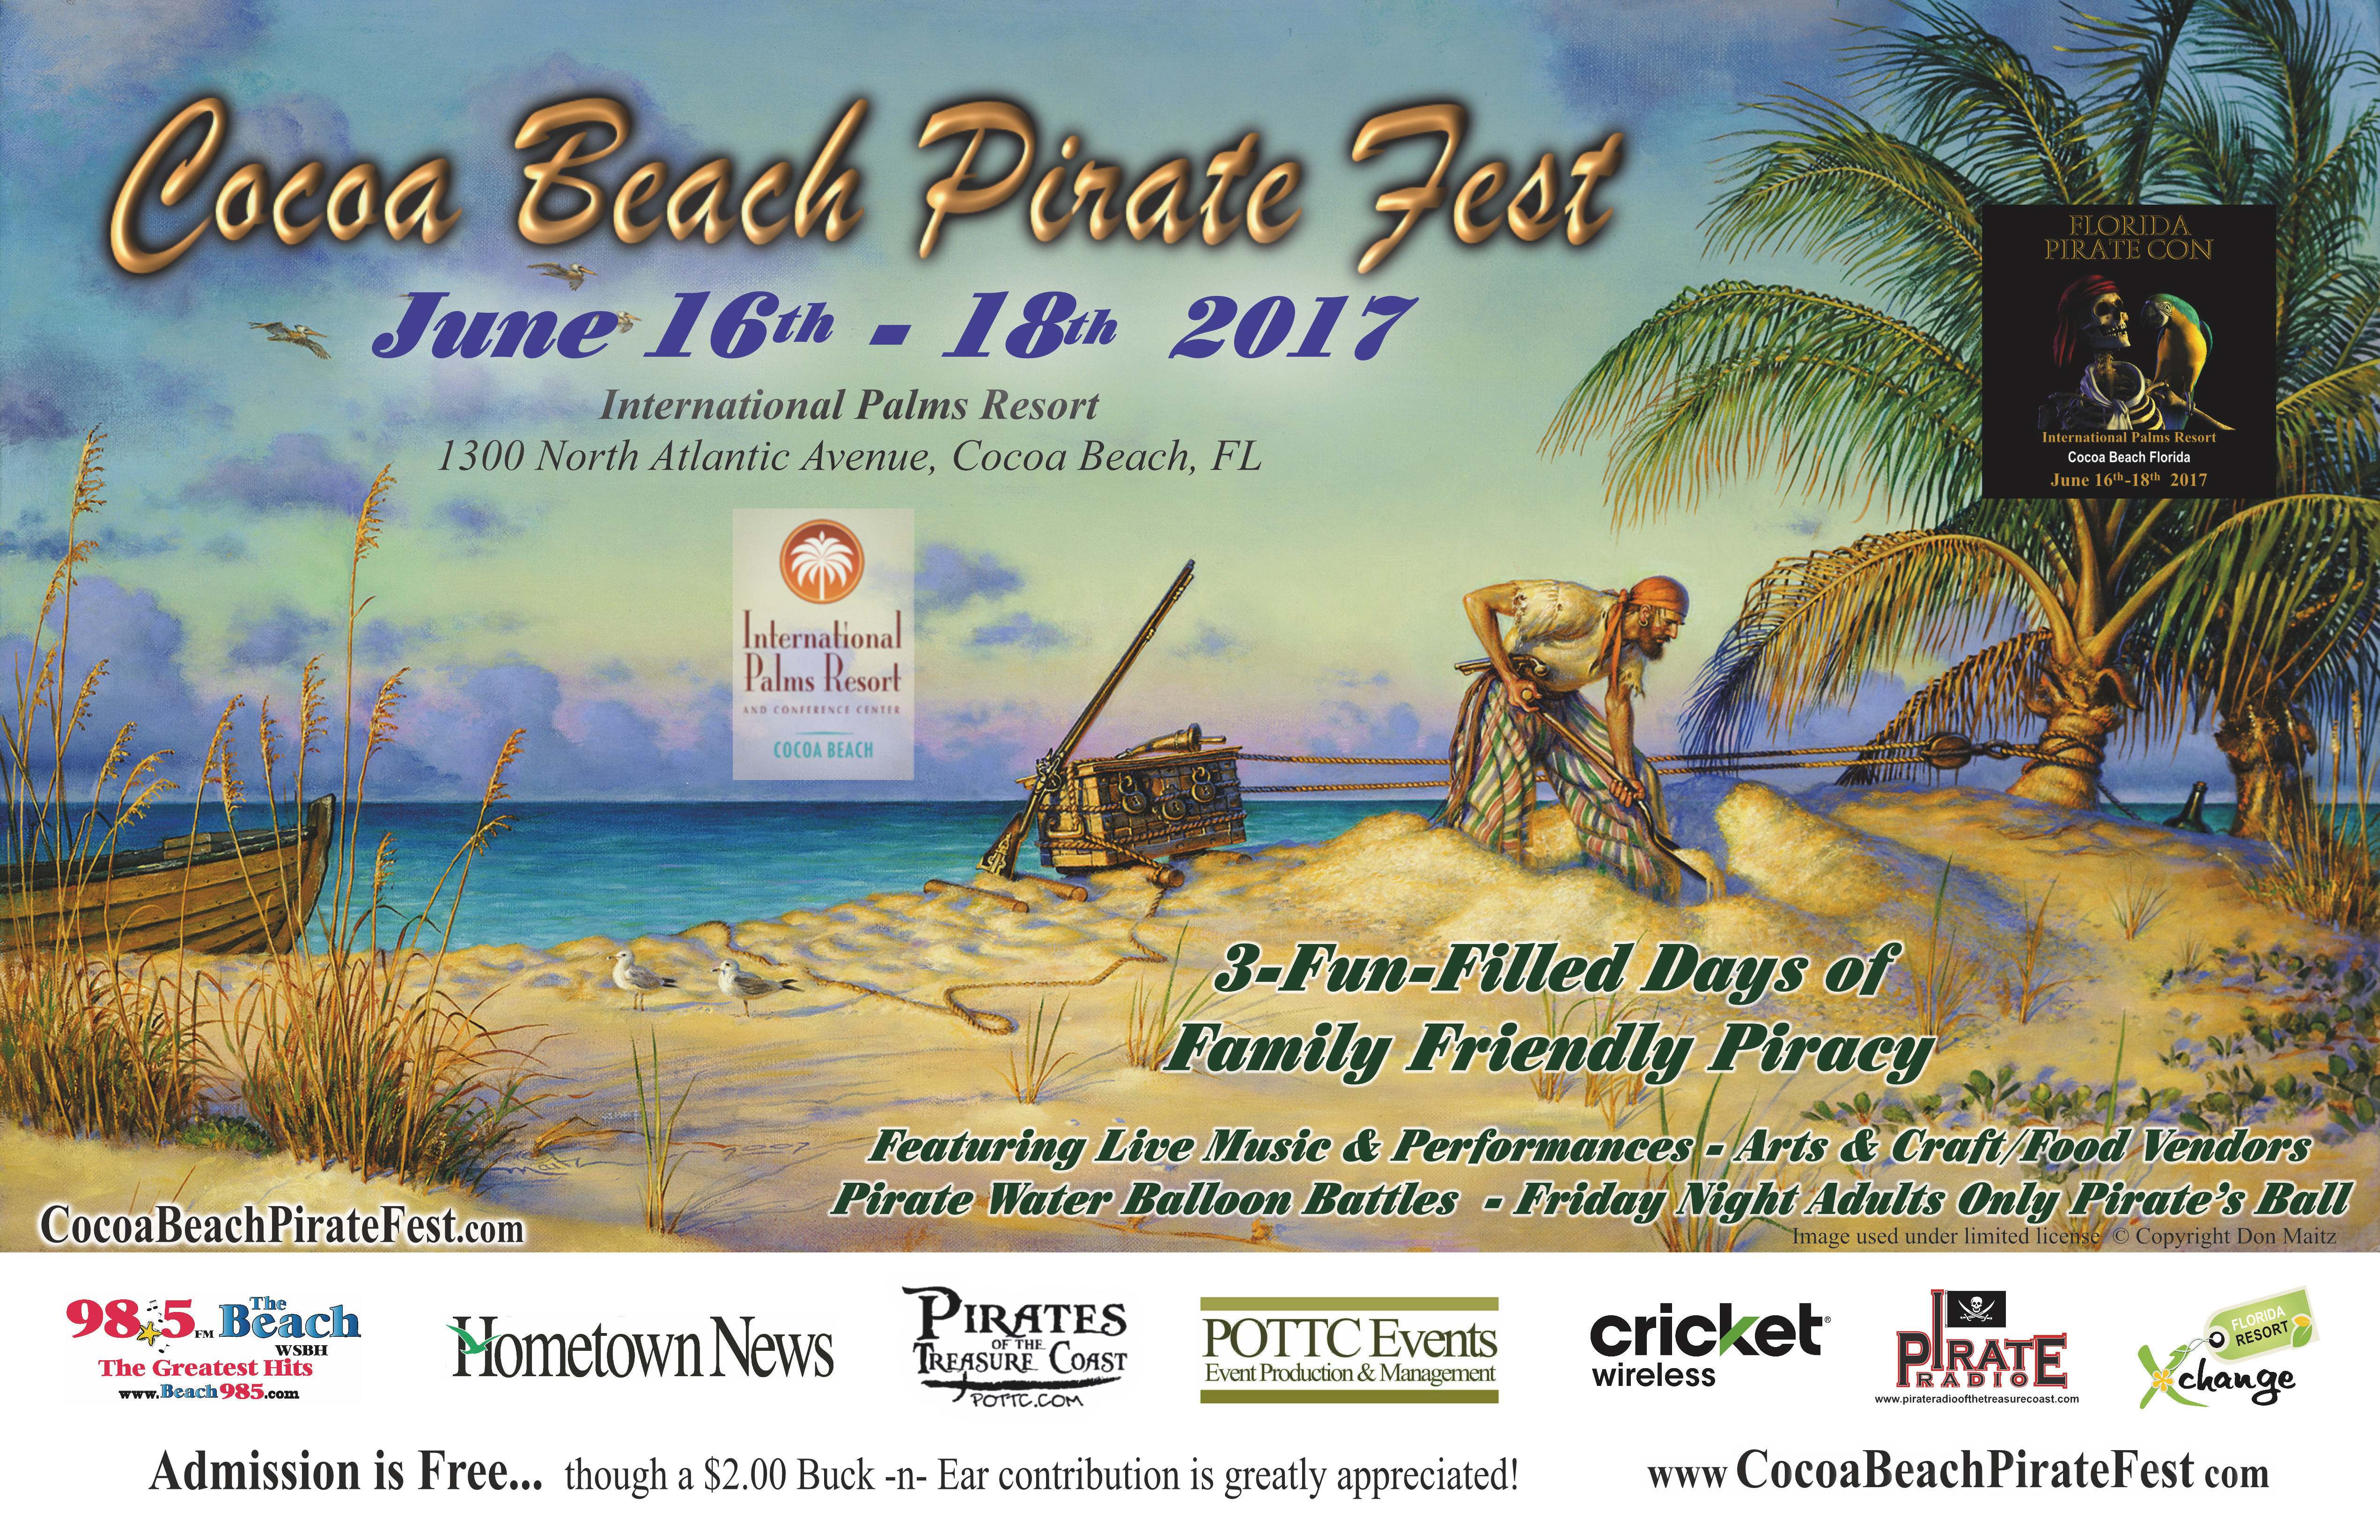 Cocoa Beach Pirate Fest